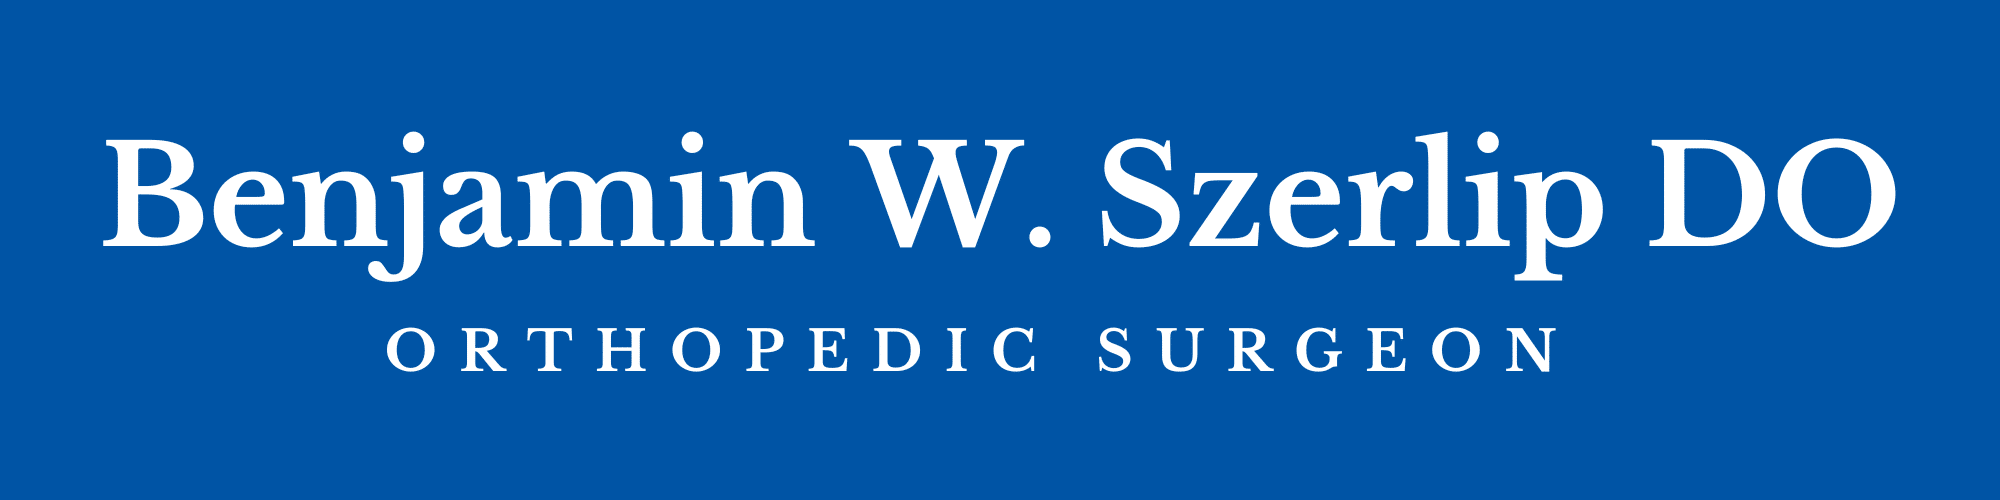 Benjamin W. Szerlip DO logo